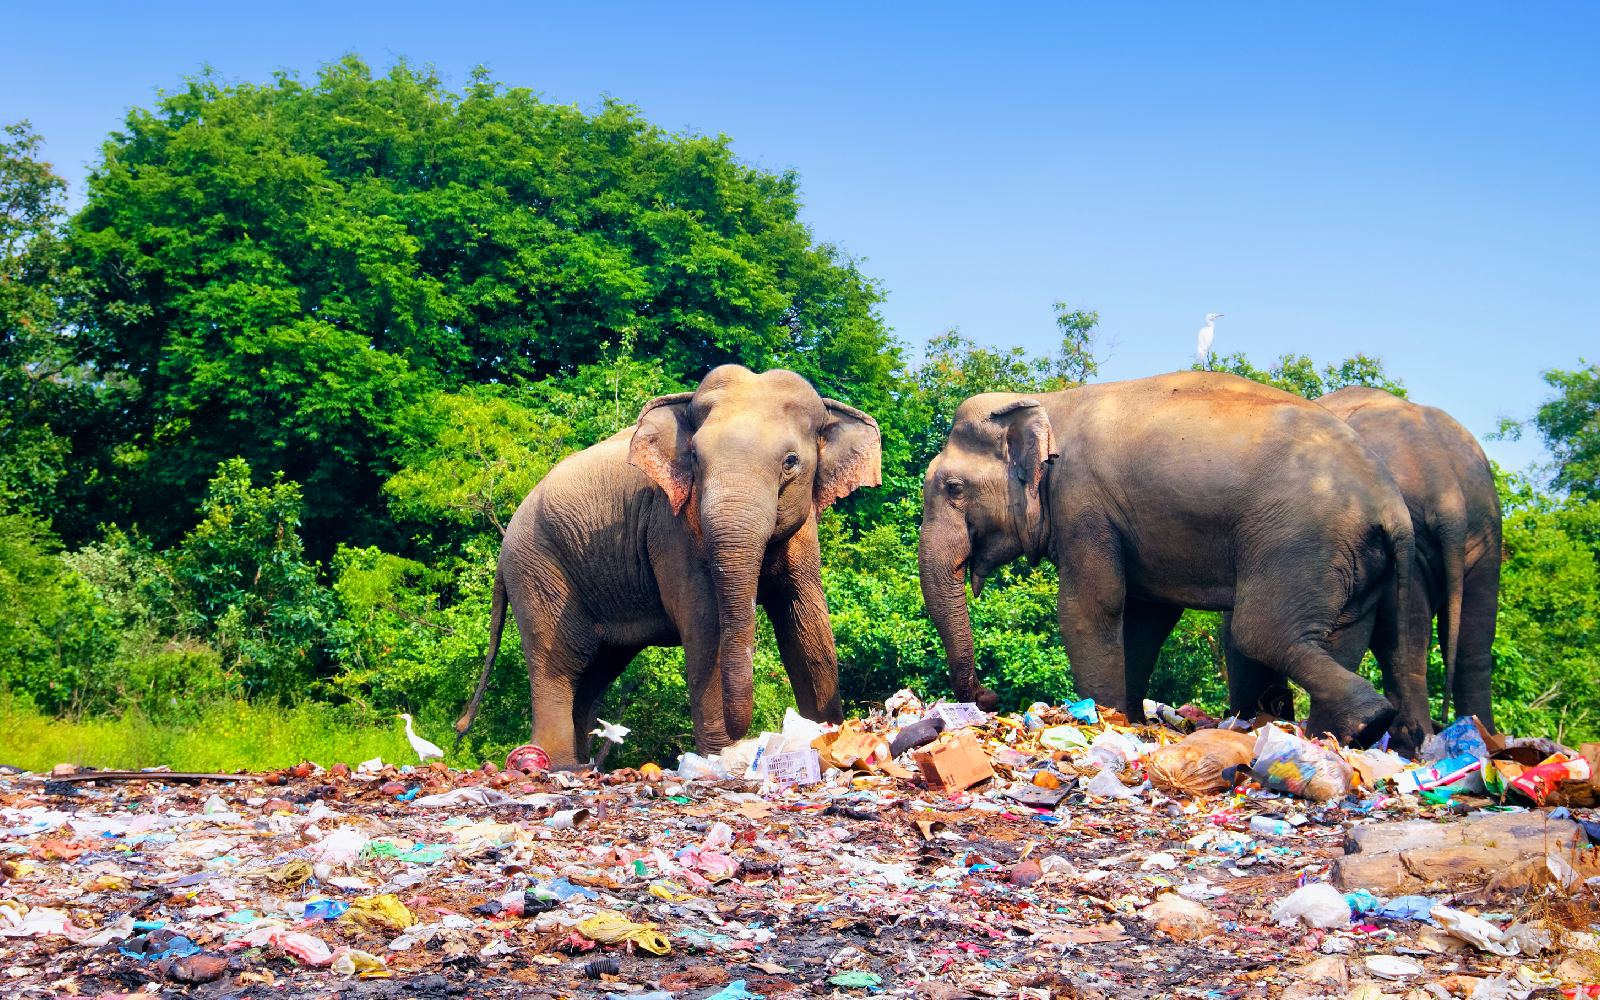 elephants in dump